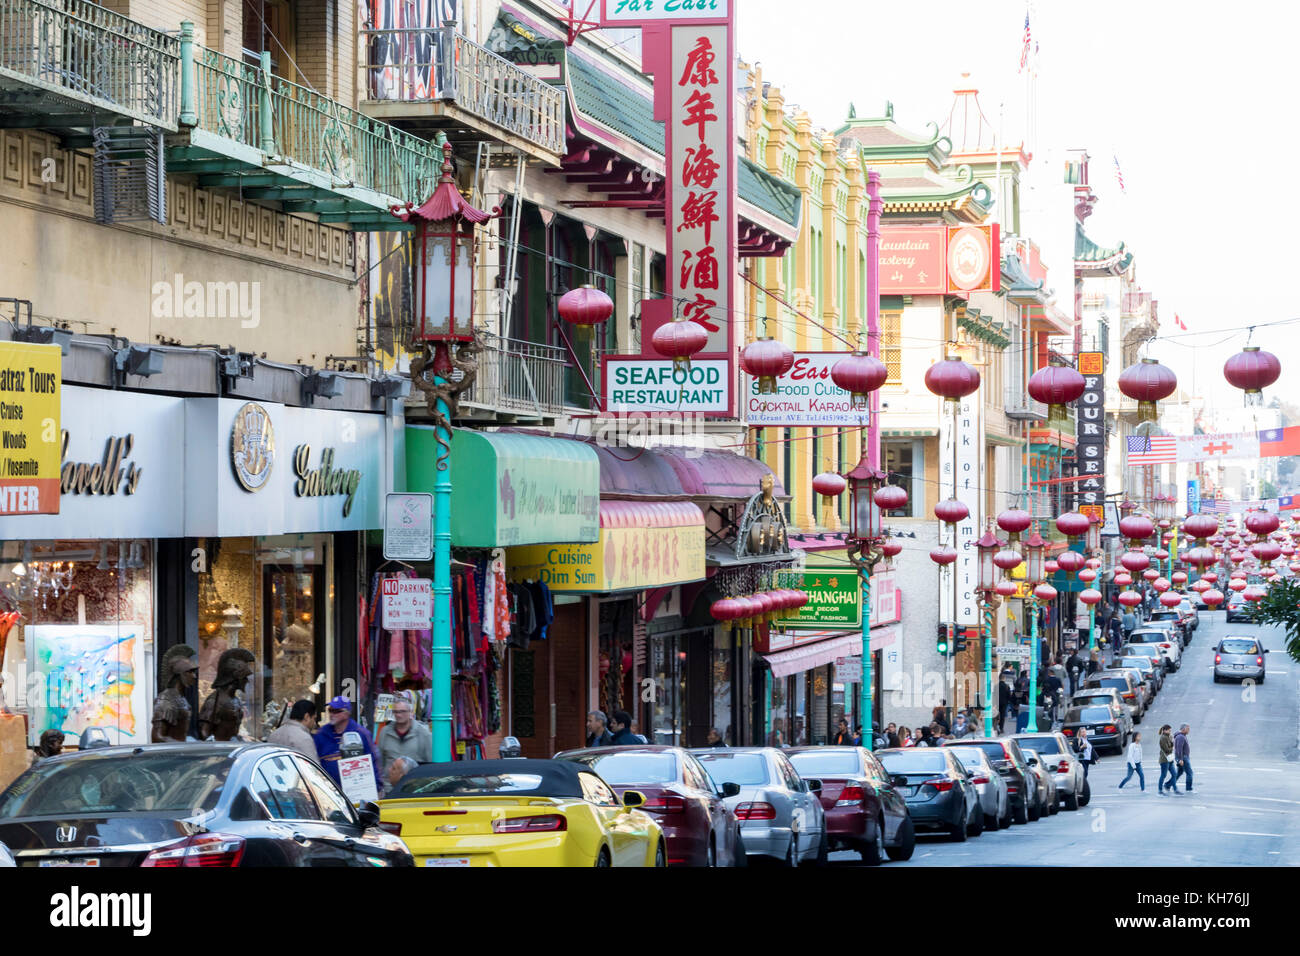 San Francisco - ca. 2017: Massen von Menschen zu Fuß von den Geschäften und Restaurants entlang der Grant Street in der chinatown Viertel von San Francisco, Ca. Stockfoto